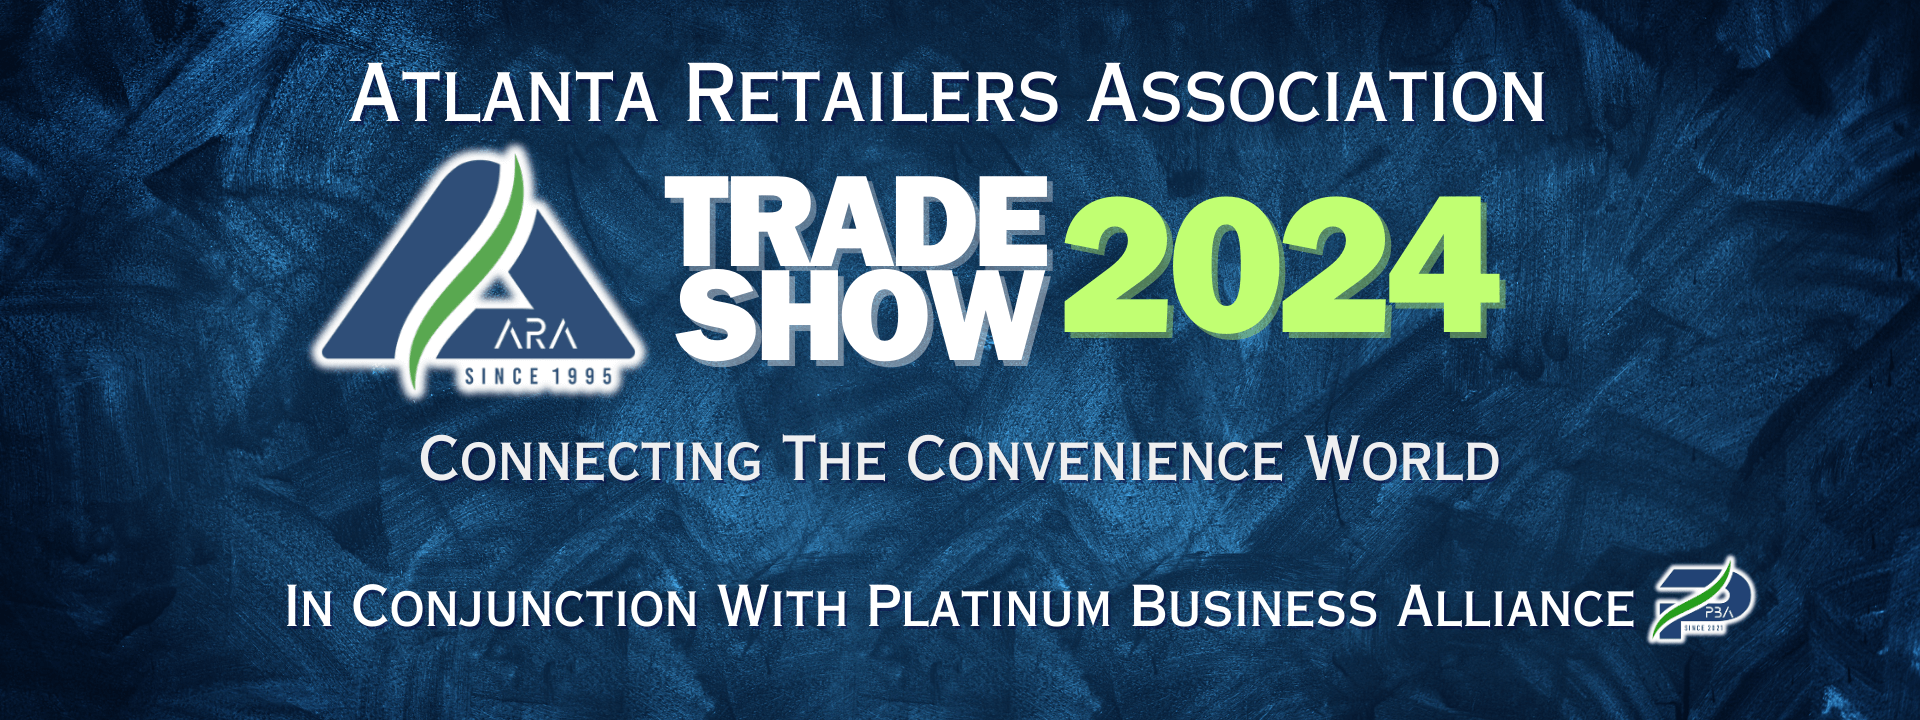 ARA Trade Show 2024 Atlanta Retailers Association